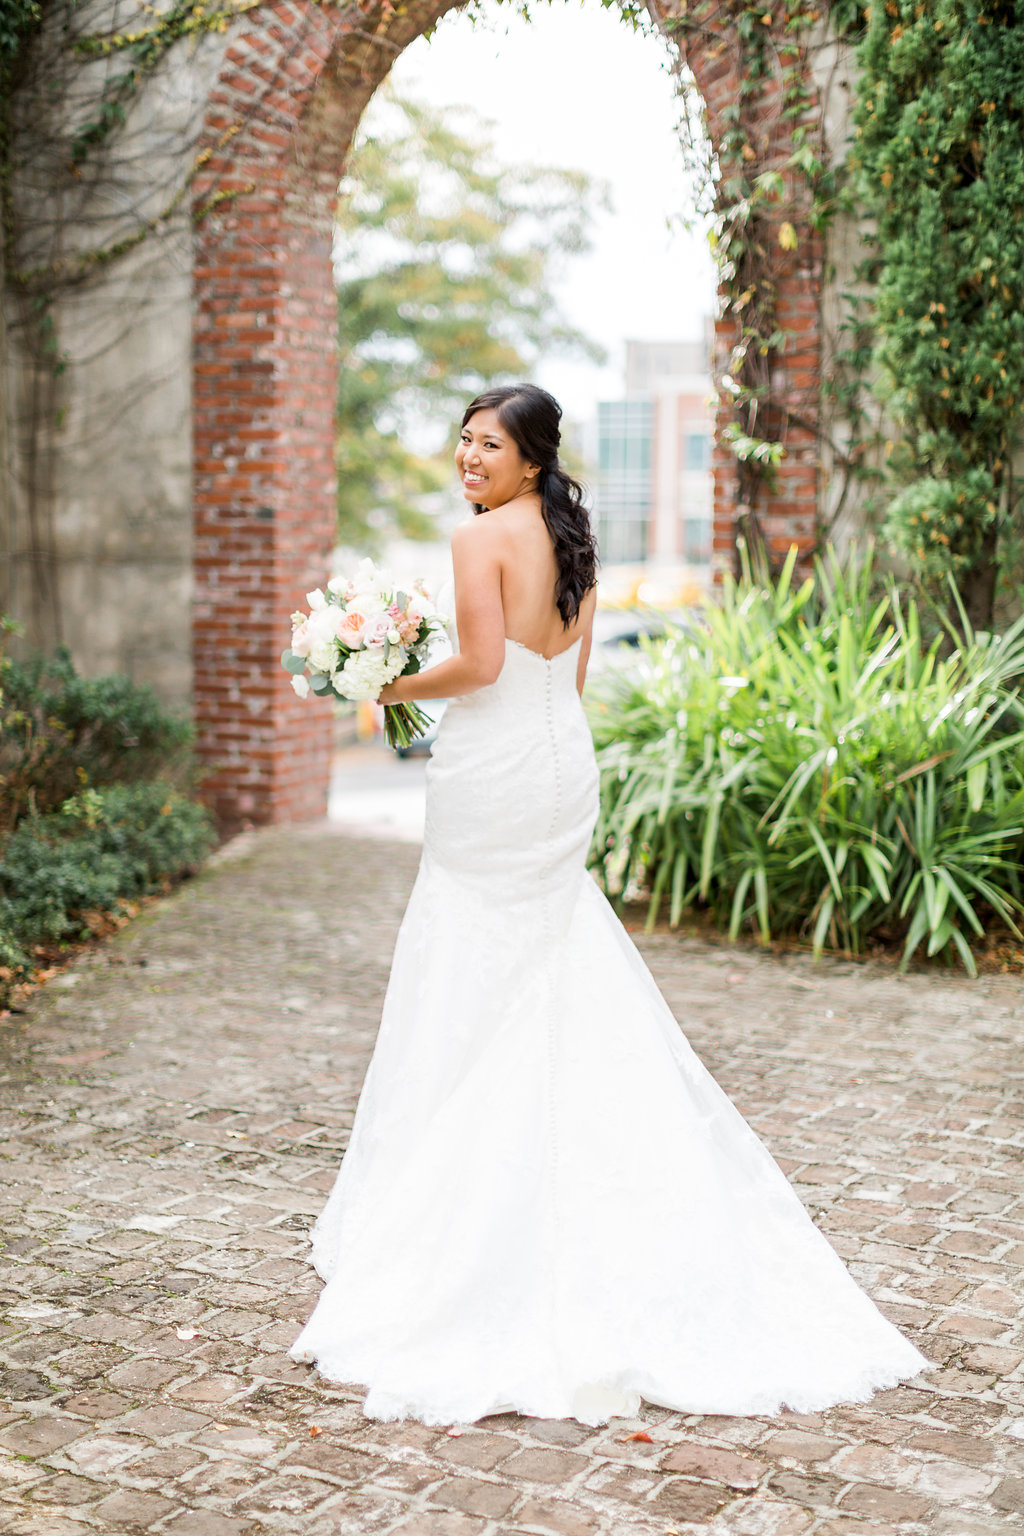 Summerour Studio Wedding - Atlanta Wedding Venue — The Overwhelmed Bride Wedding Blog